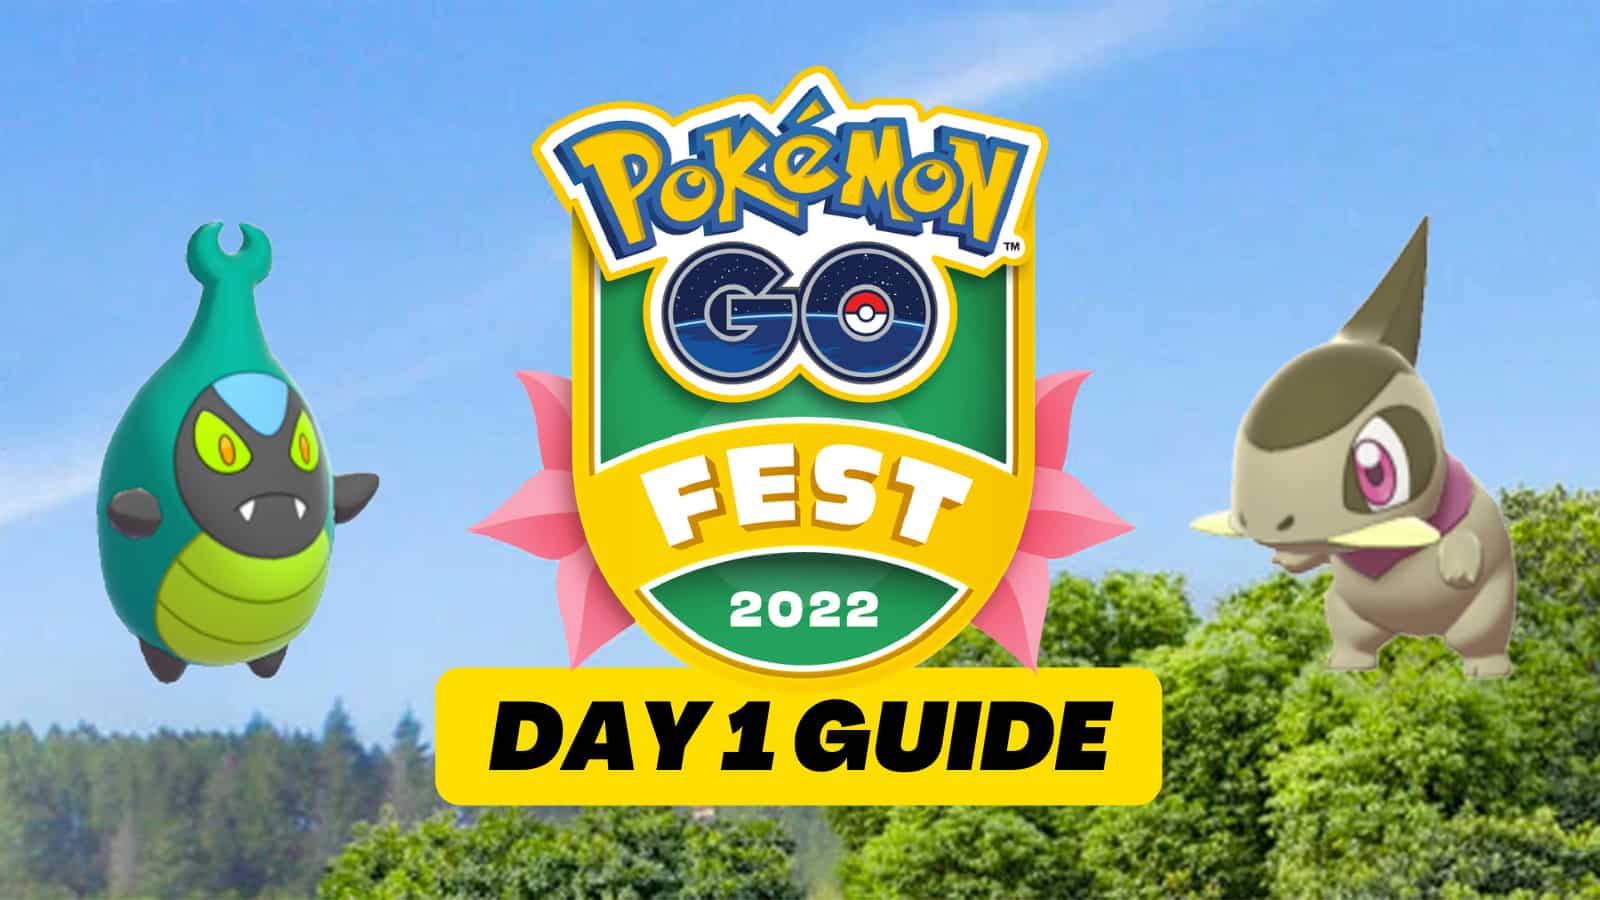 Pokemon-Go-Fest-2022-Day-1-Guide